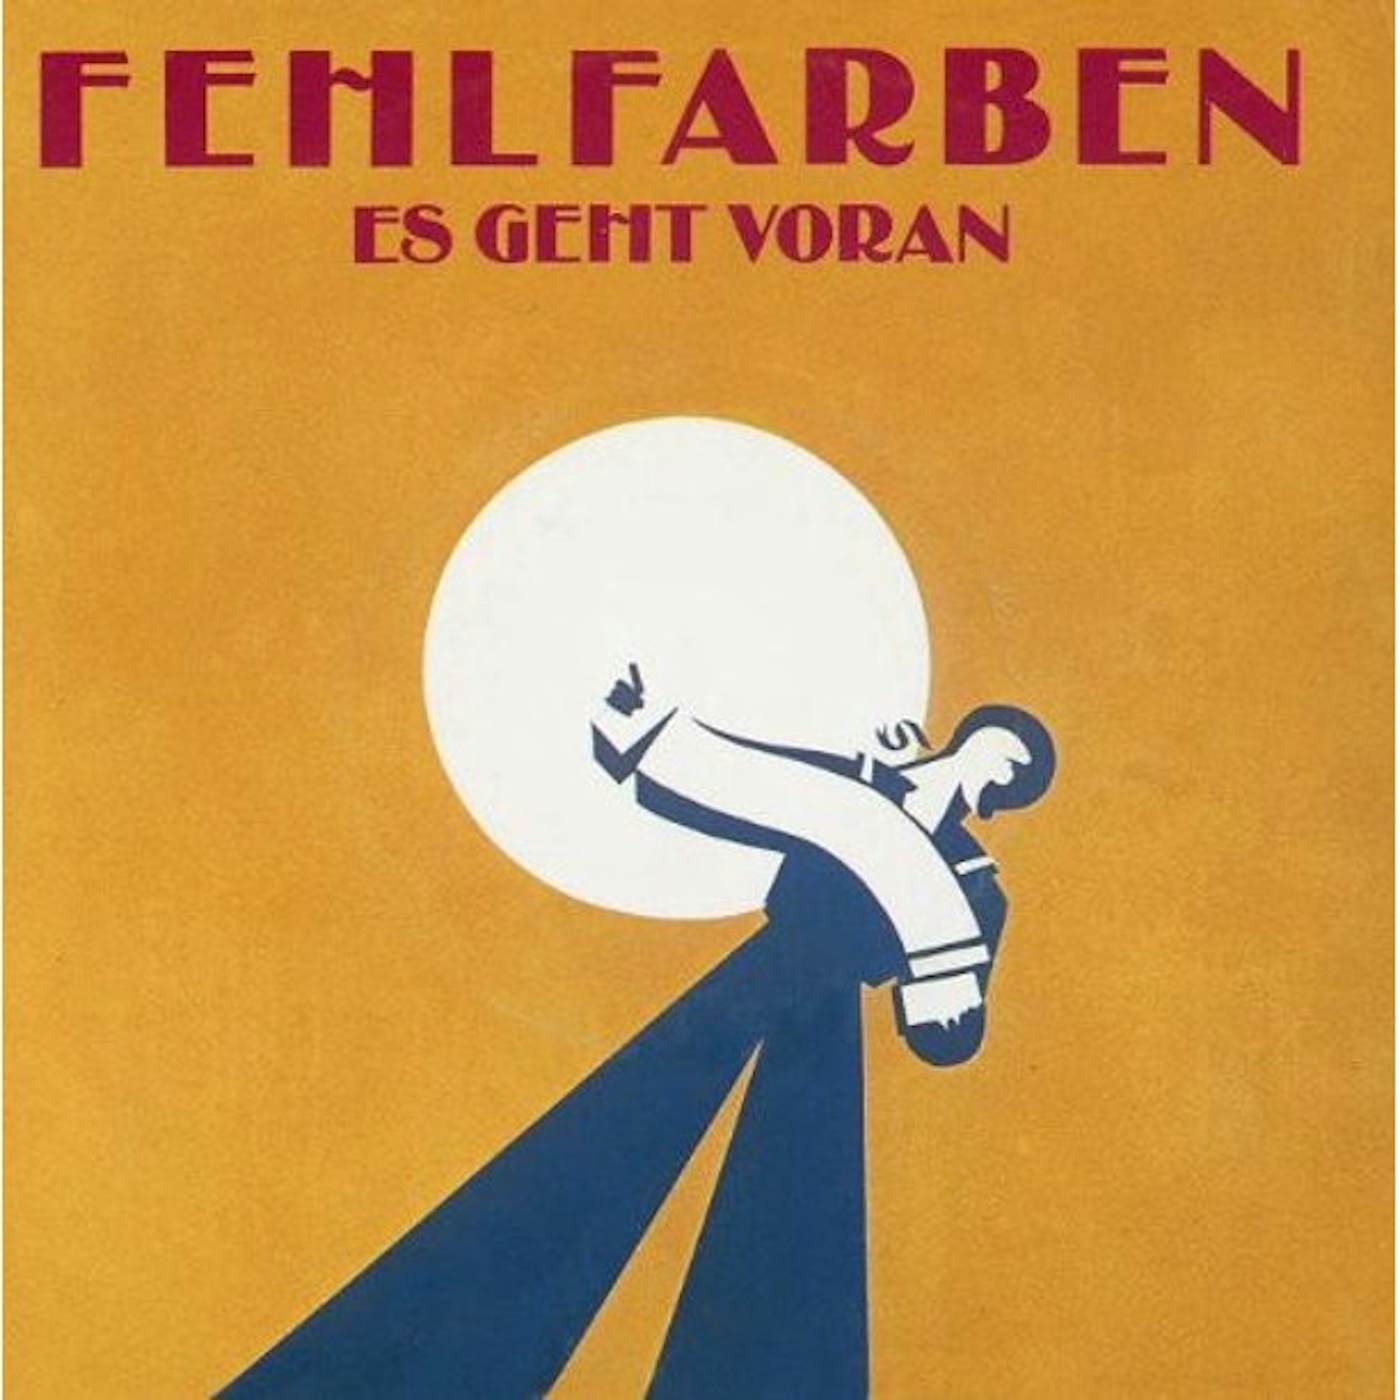 Fehlfarben Ein Jahr (Es Geht Voran)/Feuer An Bord Vinyl Record